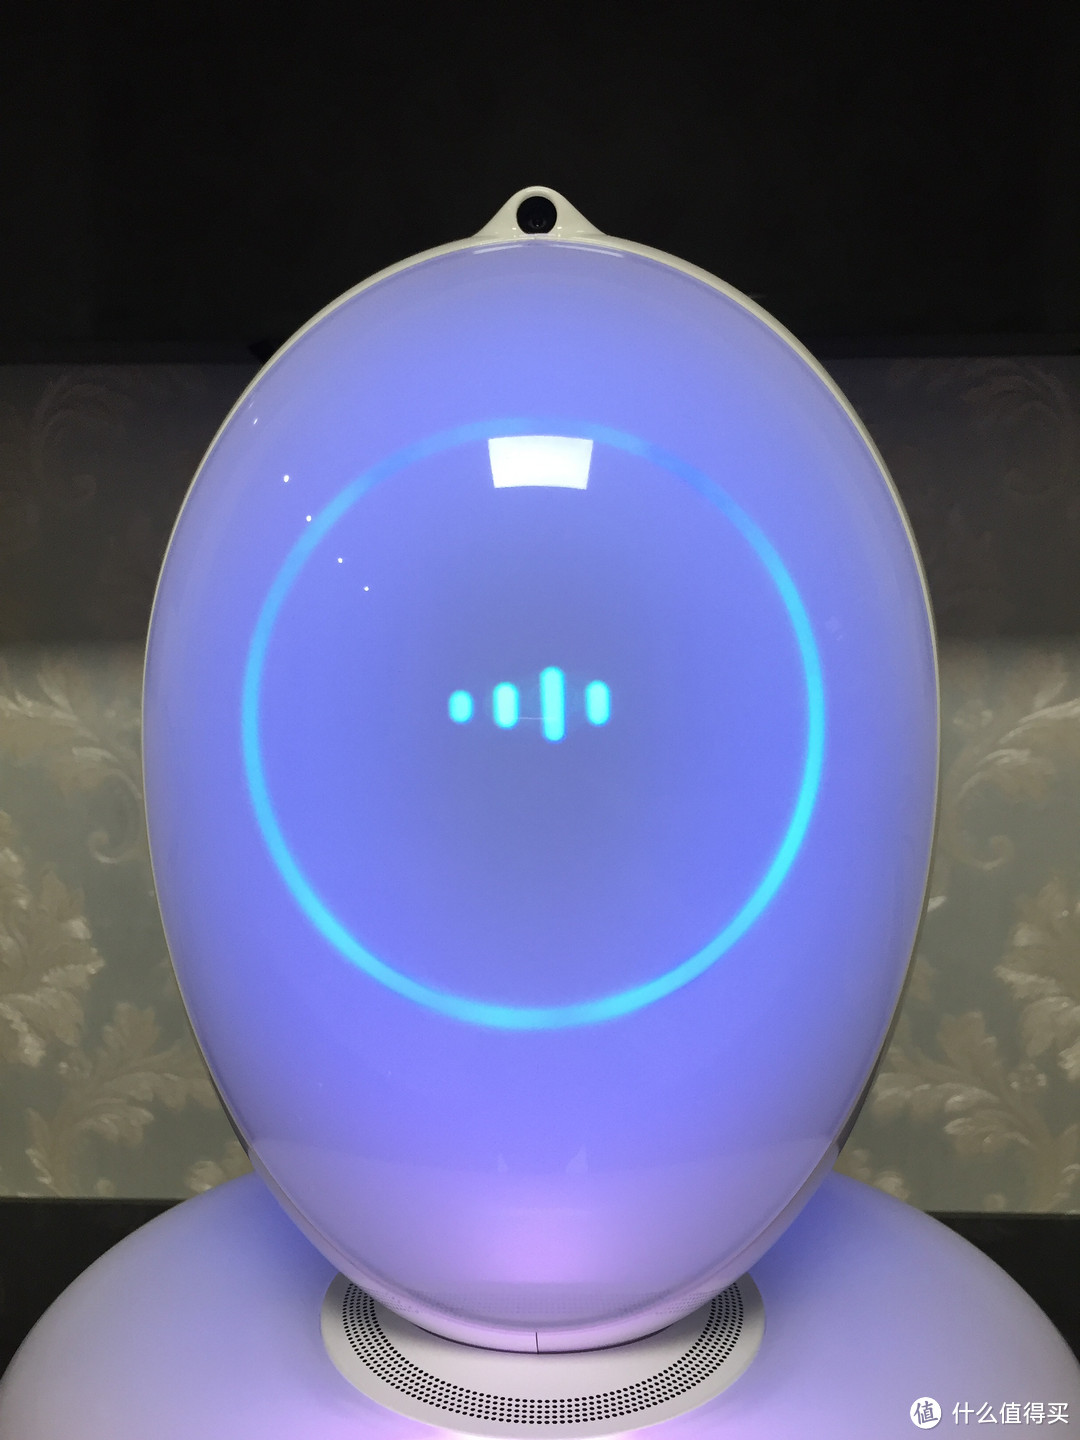 1部IPHONE换1个智能机器人，你觉得值吗？Rokid 家庭智能机器人开箱体验